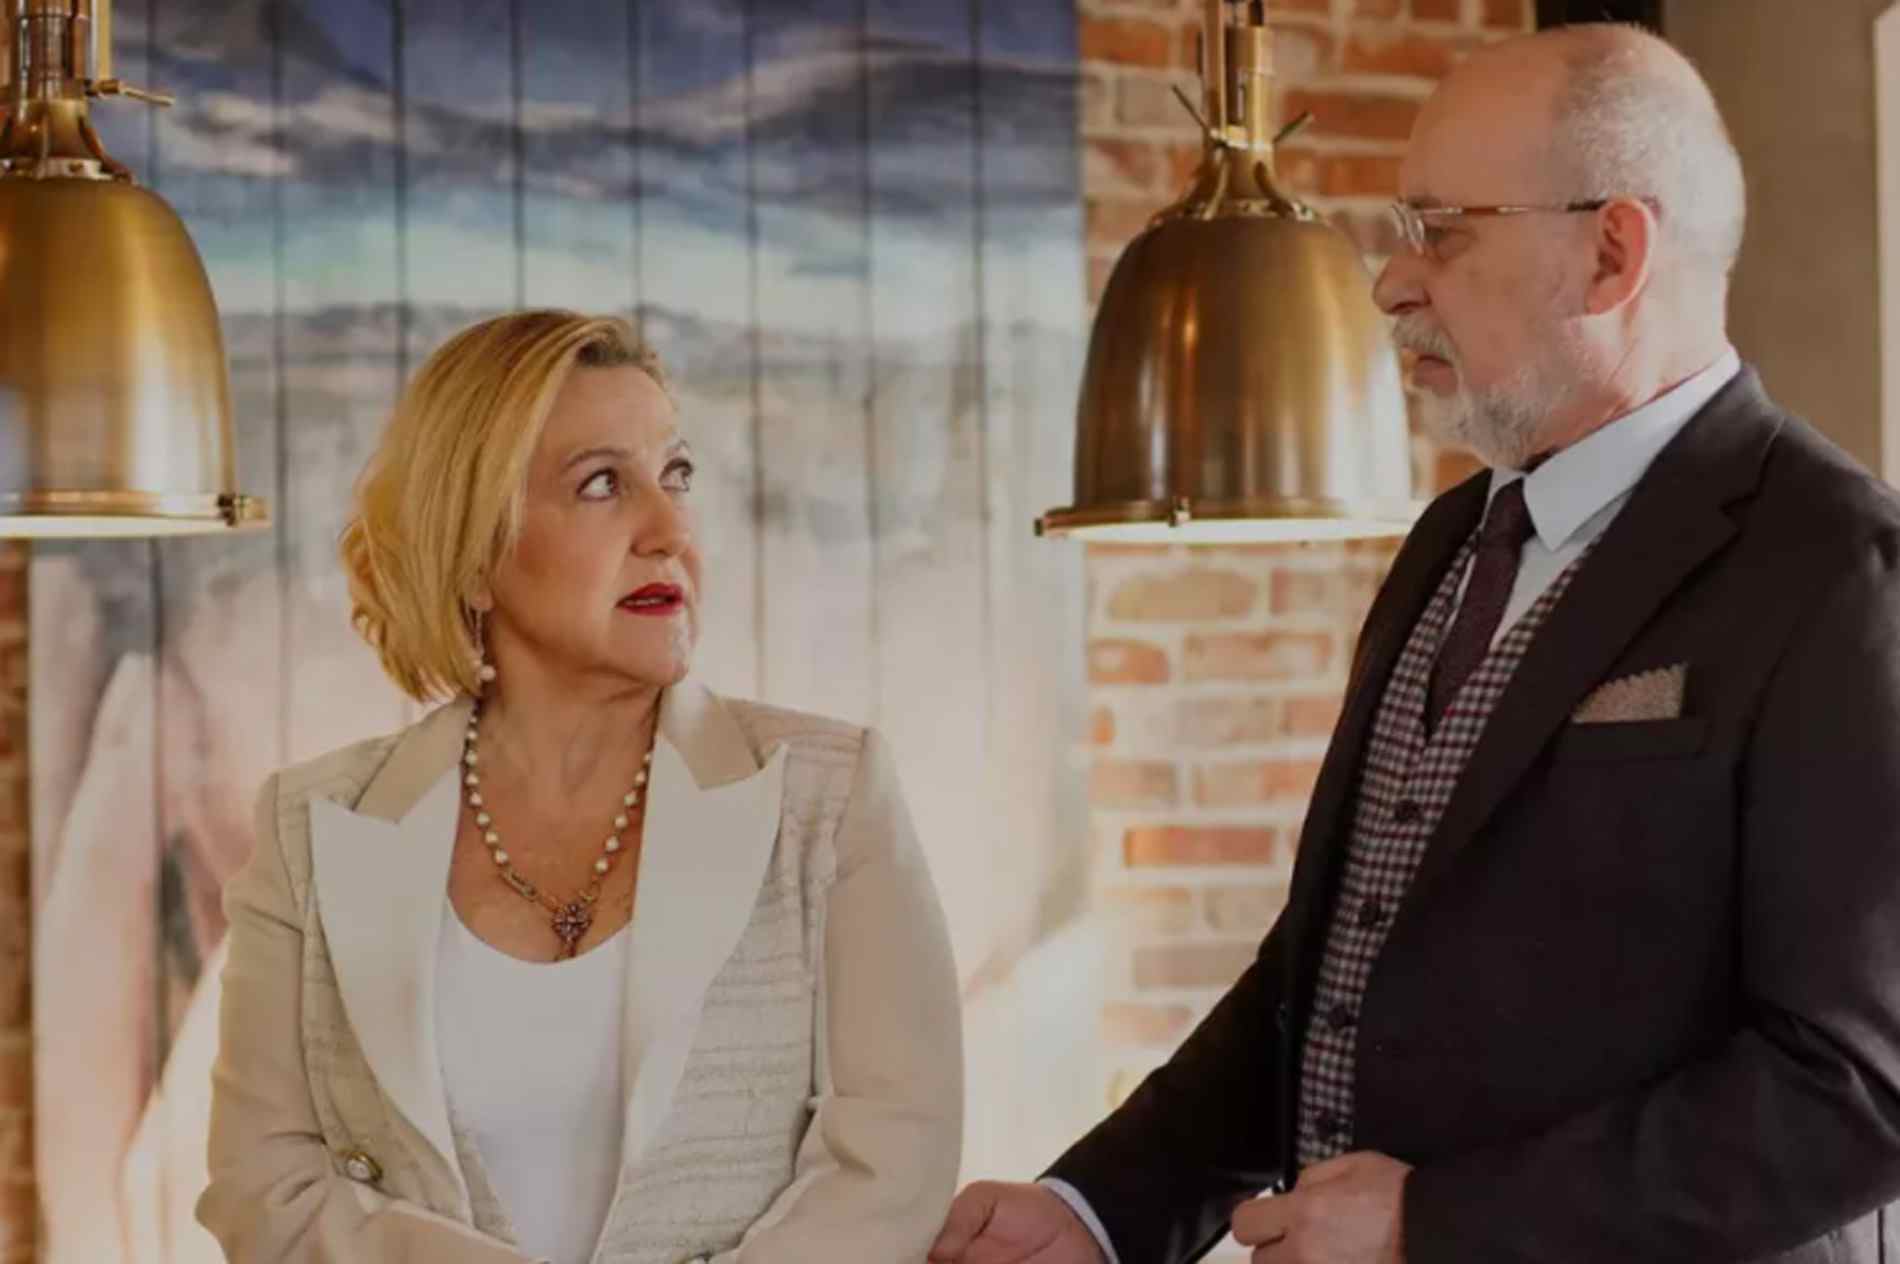 FOX TV canlı yayın Evlilik Hakkında Her Şey 25. bölüm full, tek parça izle | Evlilik Hakkında Her Şey son bölüm izle Youtube